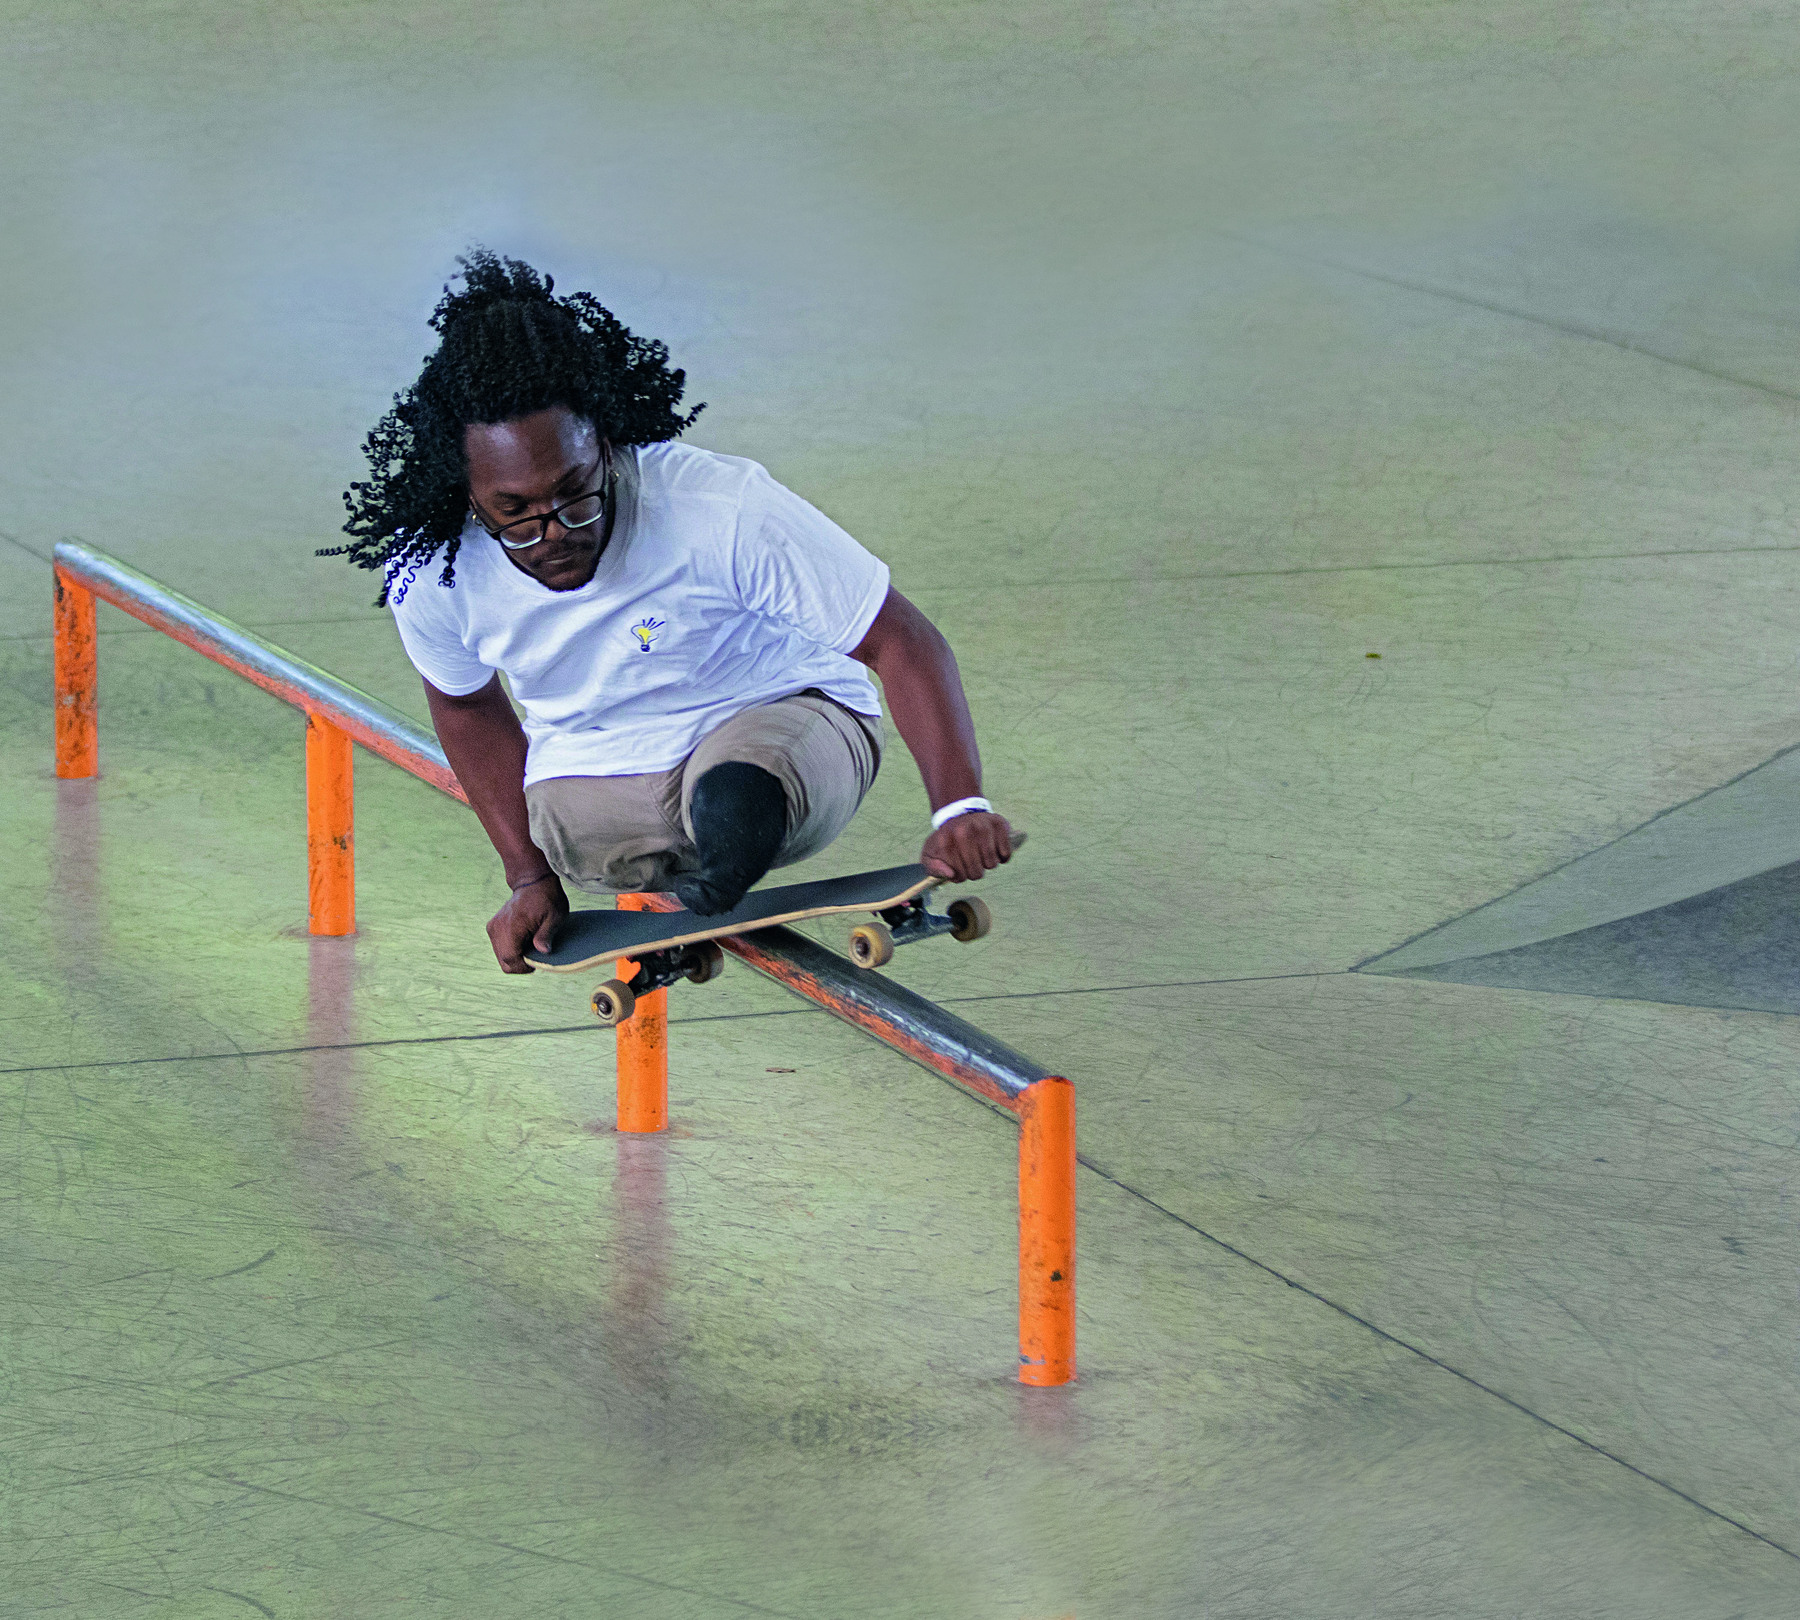 Fotografia. Um rapaz negro de cabelos pretos encaracolados sobre um skate, realizando uma manobra sobre uma barra fina. Ele não possui as pernas e segura o skate com as duas mãos.